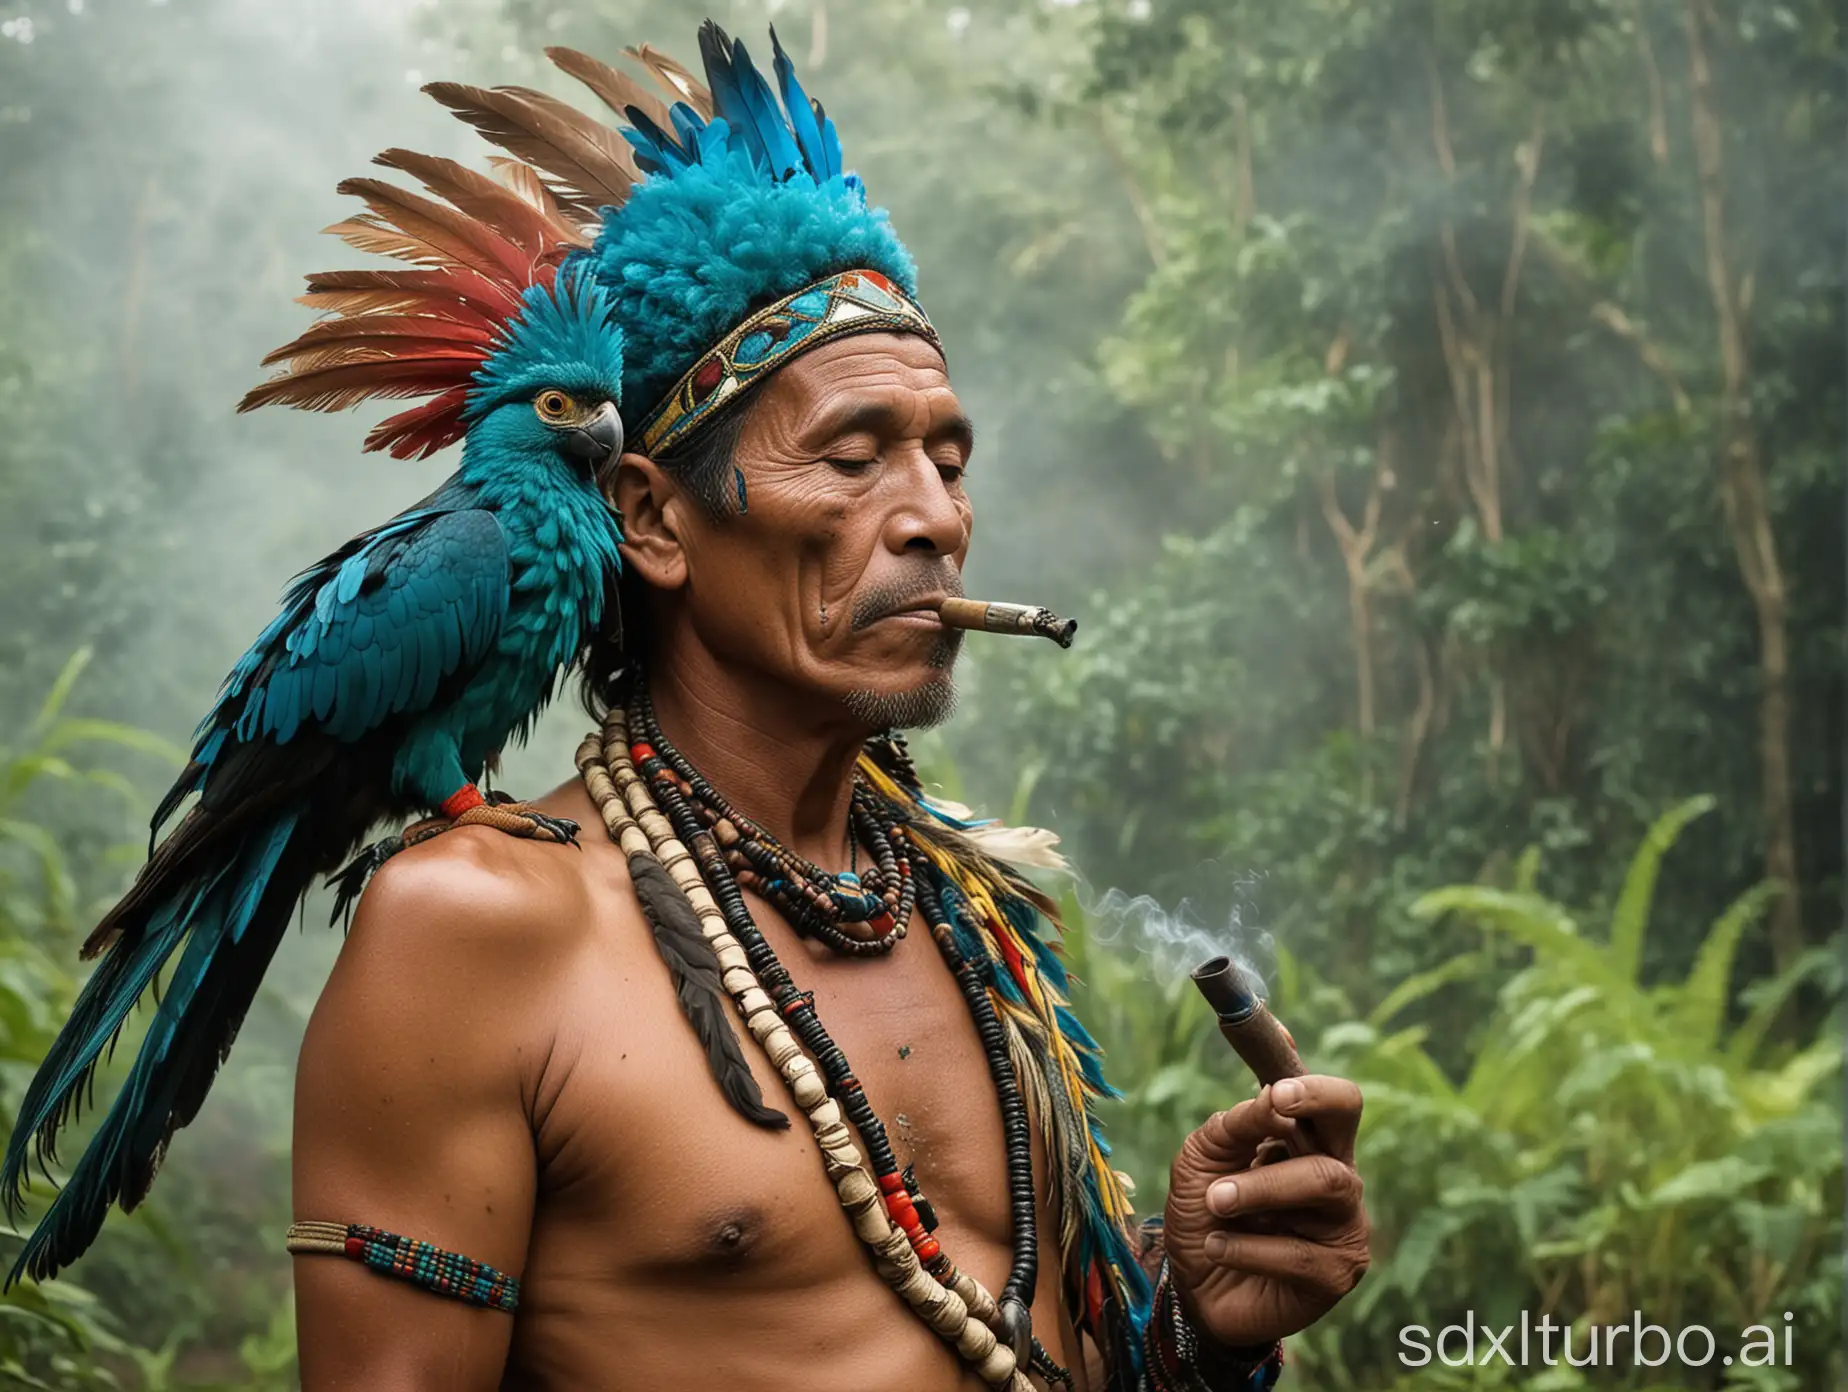 Peruvian-Shaman-Smoking-Pipe-with-Quetzal-Bird-in-Amazon-Jungle